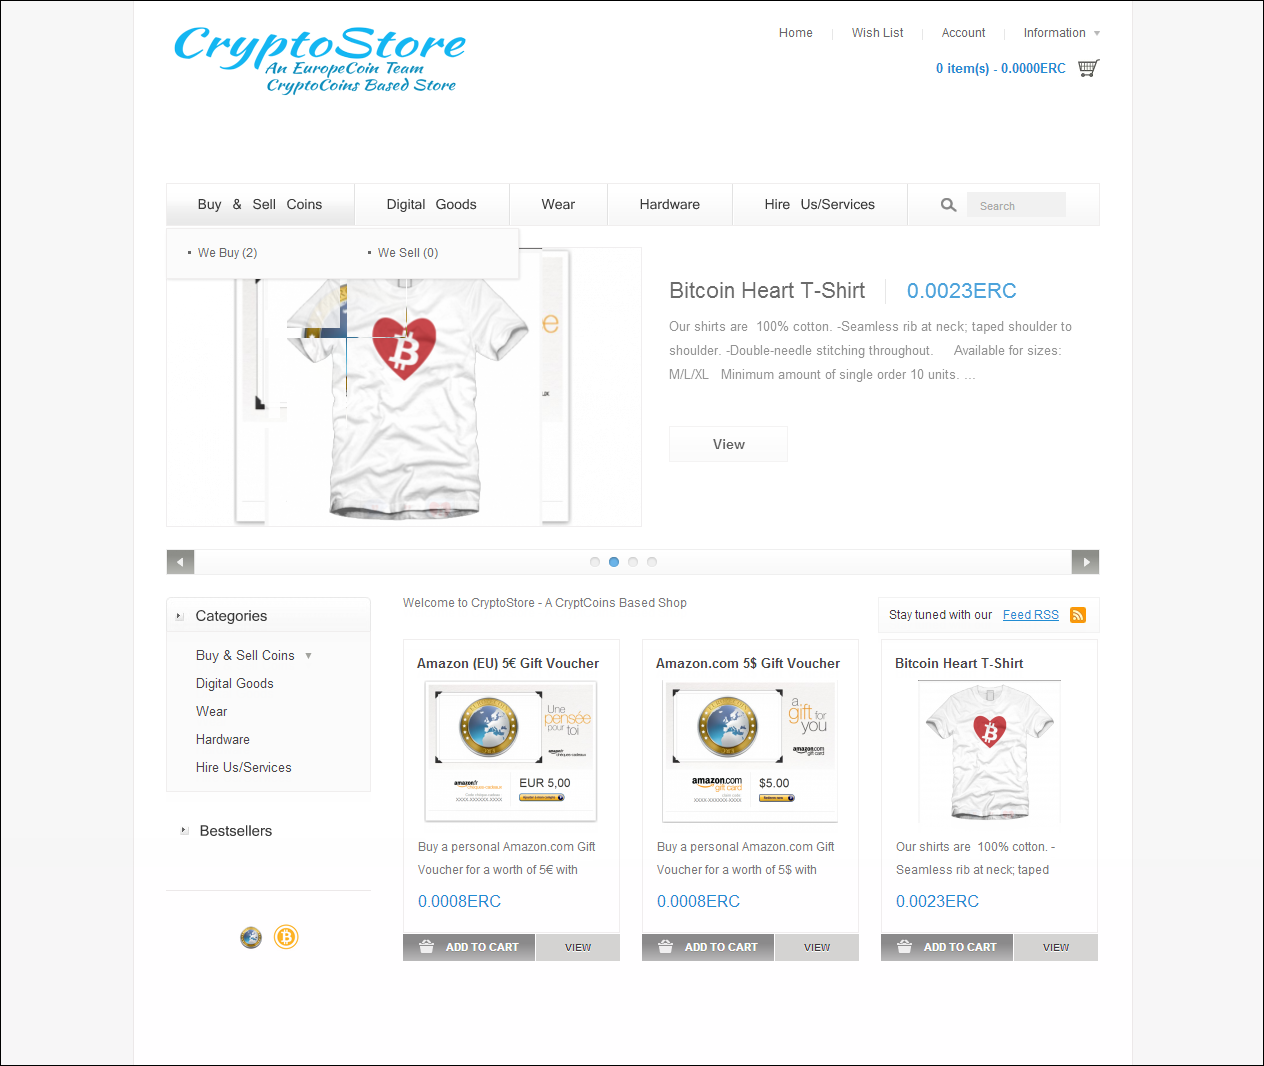 cryptostore image cover logo